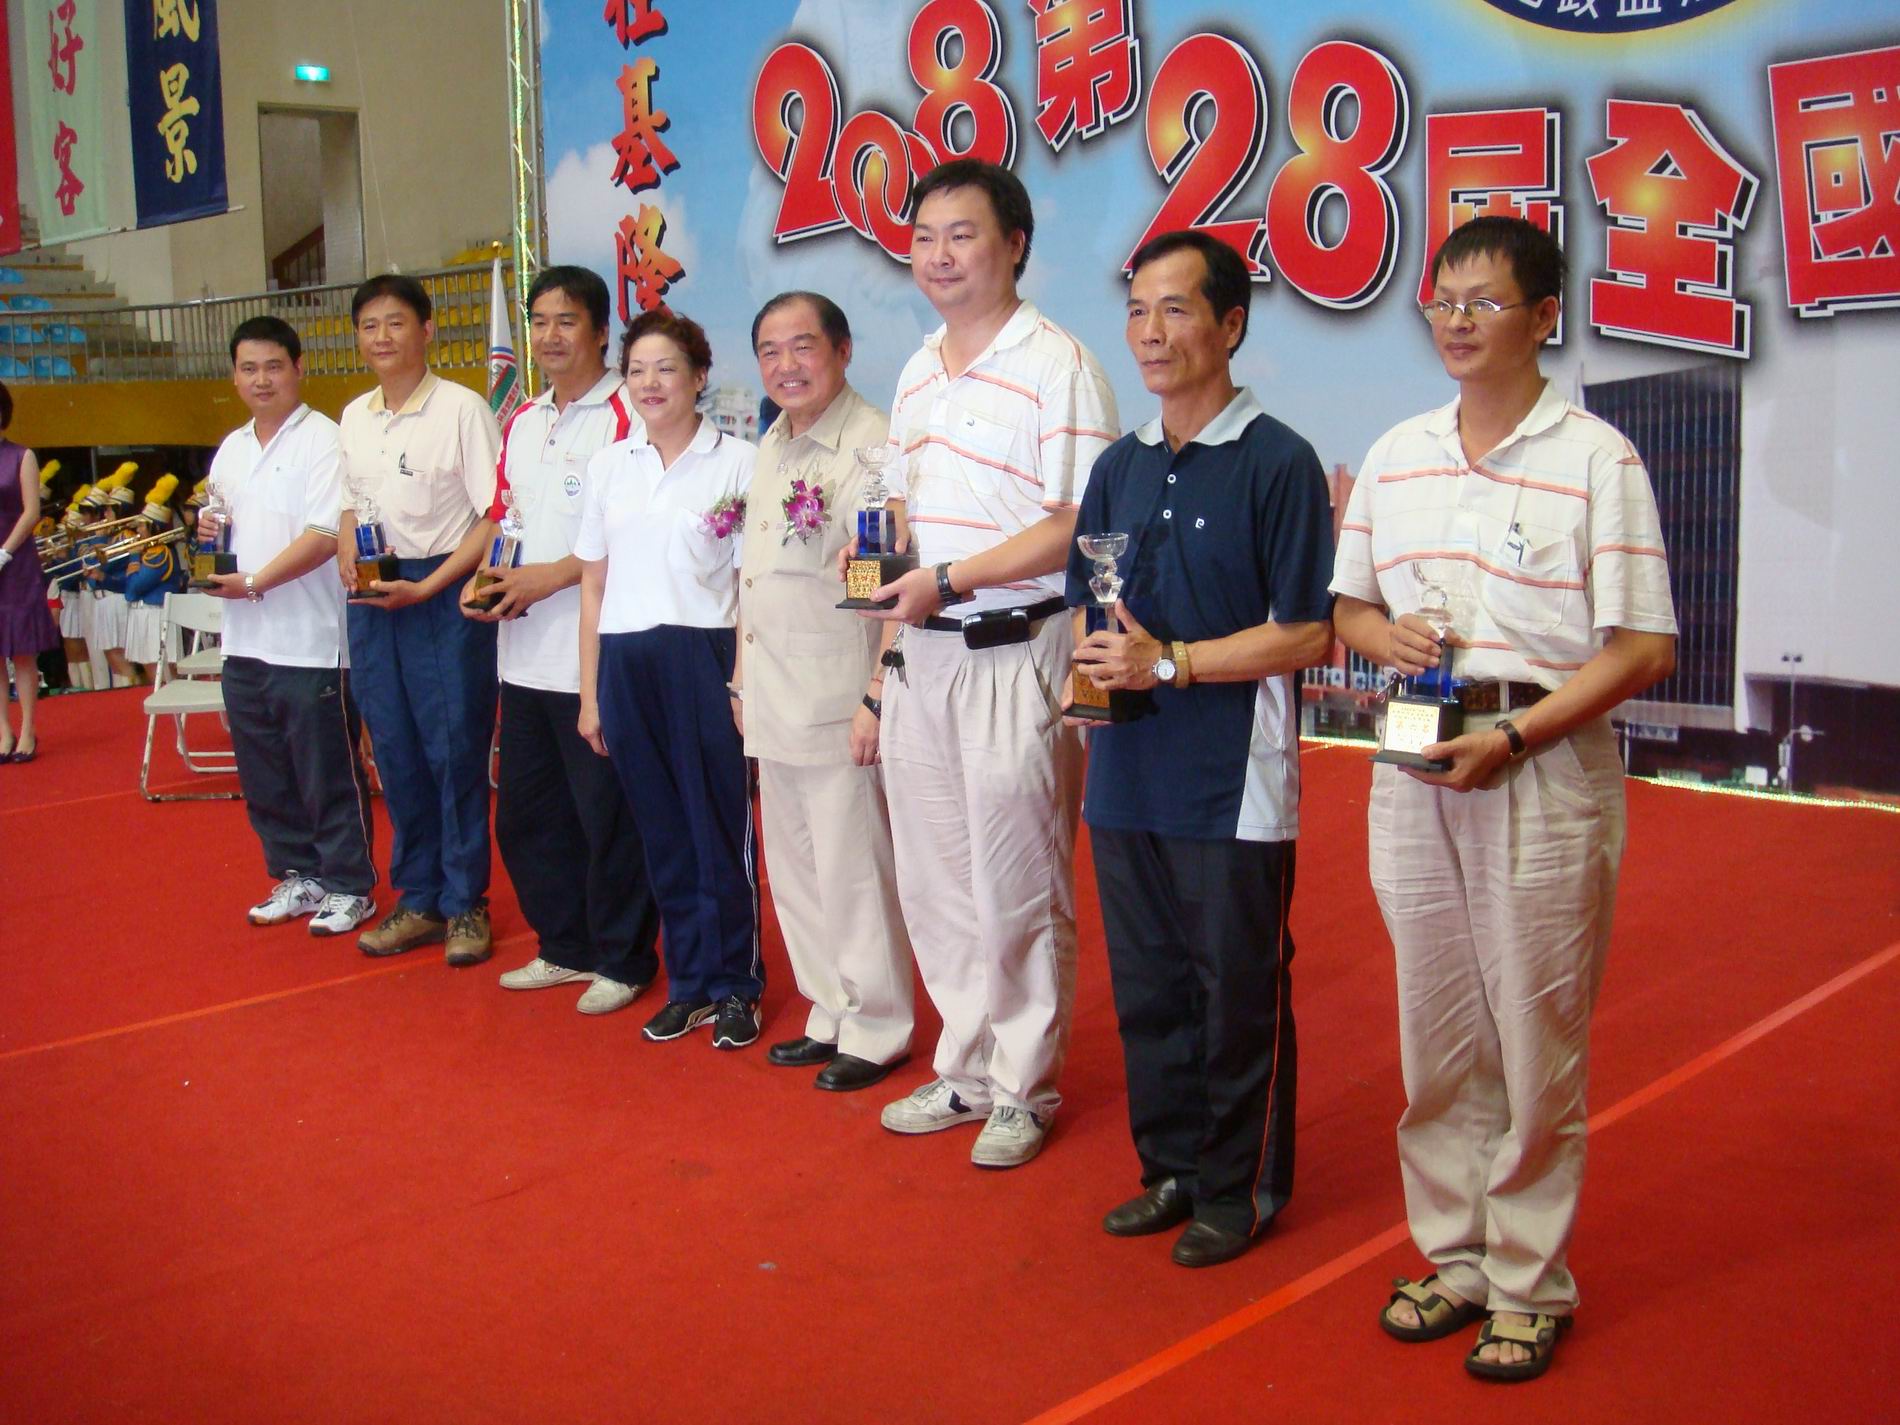 本中心南二隊郭枝明榮獲保齡球個人組男子第五名與市長張通榮合照